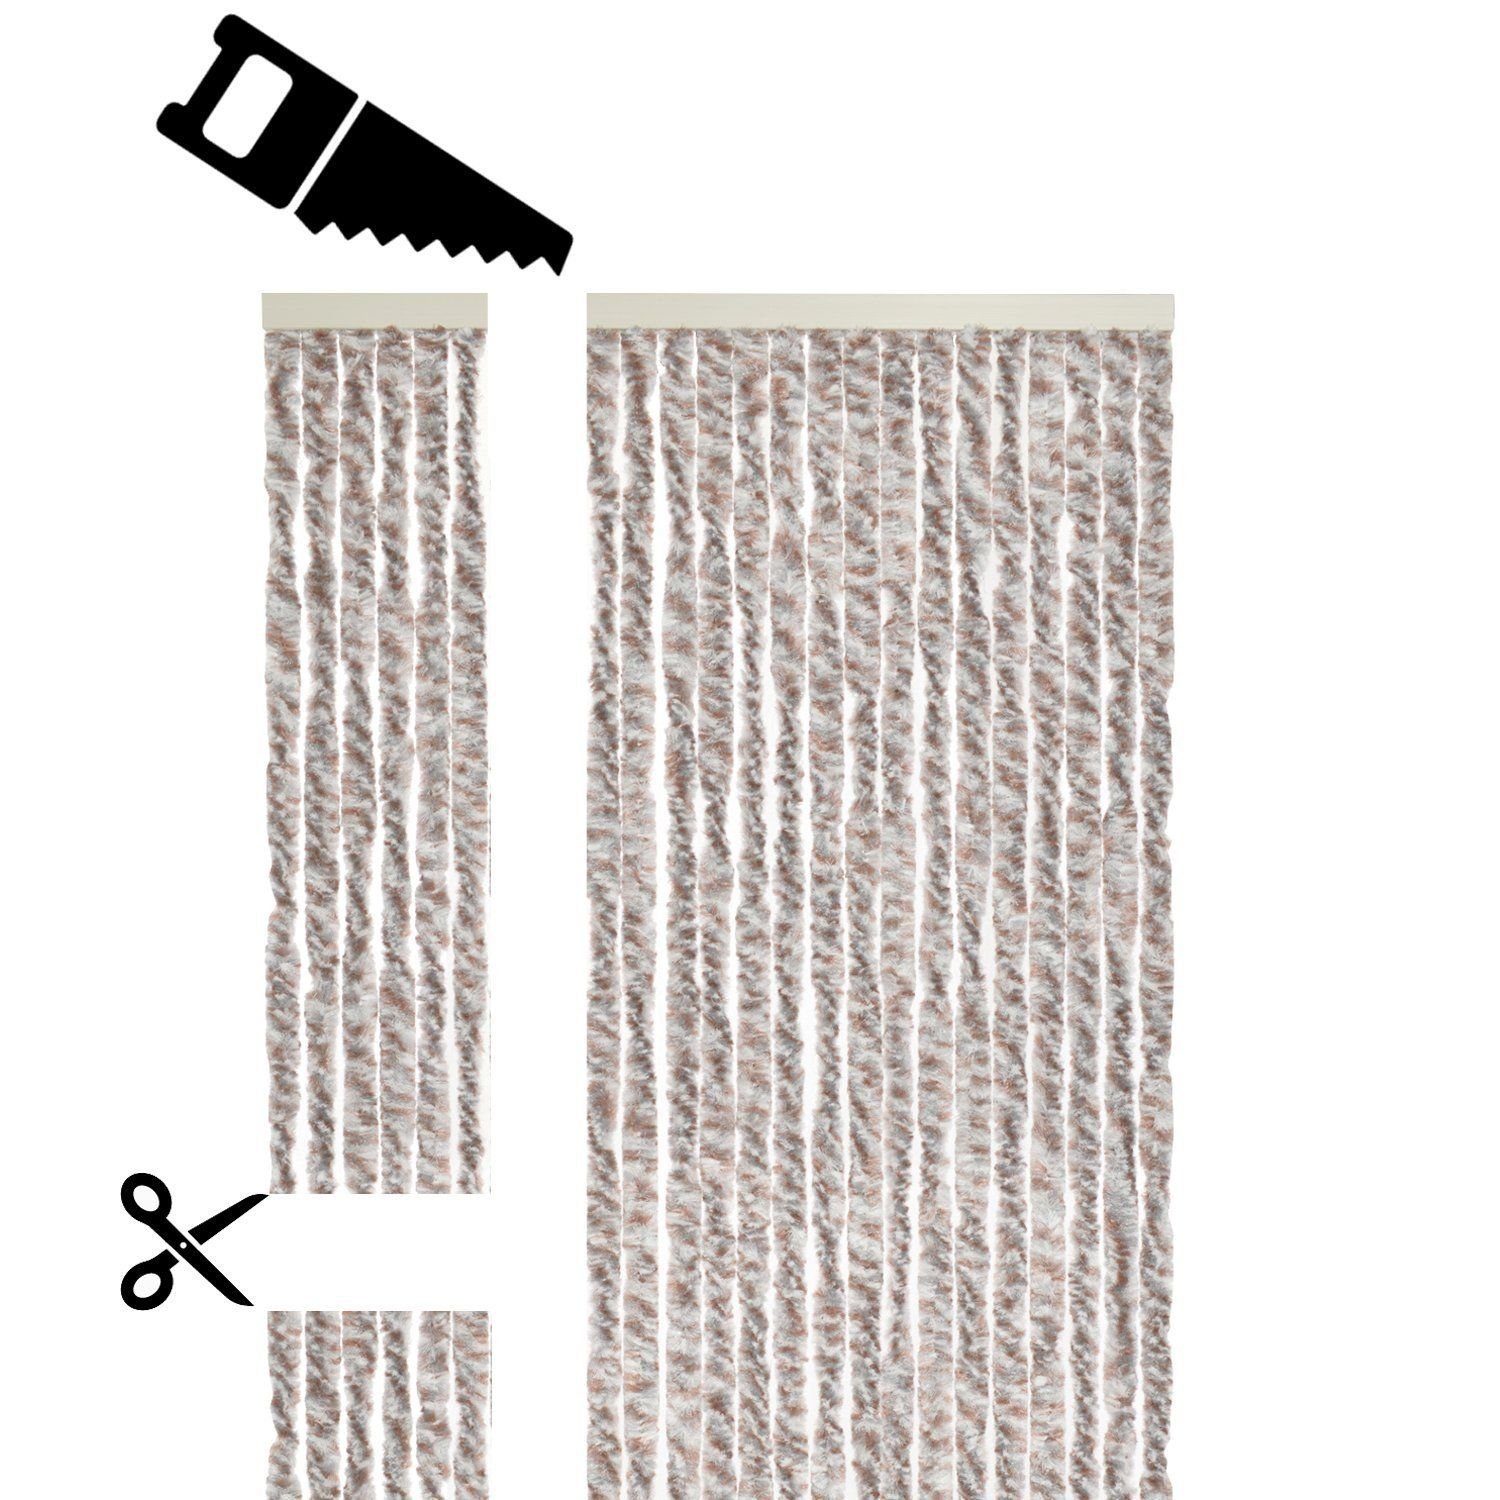 Defactoshop cm Braun, Flauschvorhang Insektenschutz-Vorhang 90x200cm Türvorhang 200 x 90 Fliegenschutz